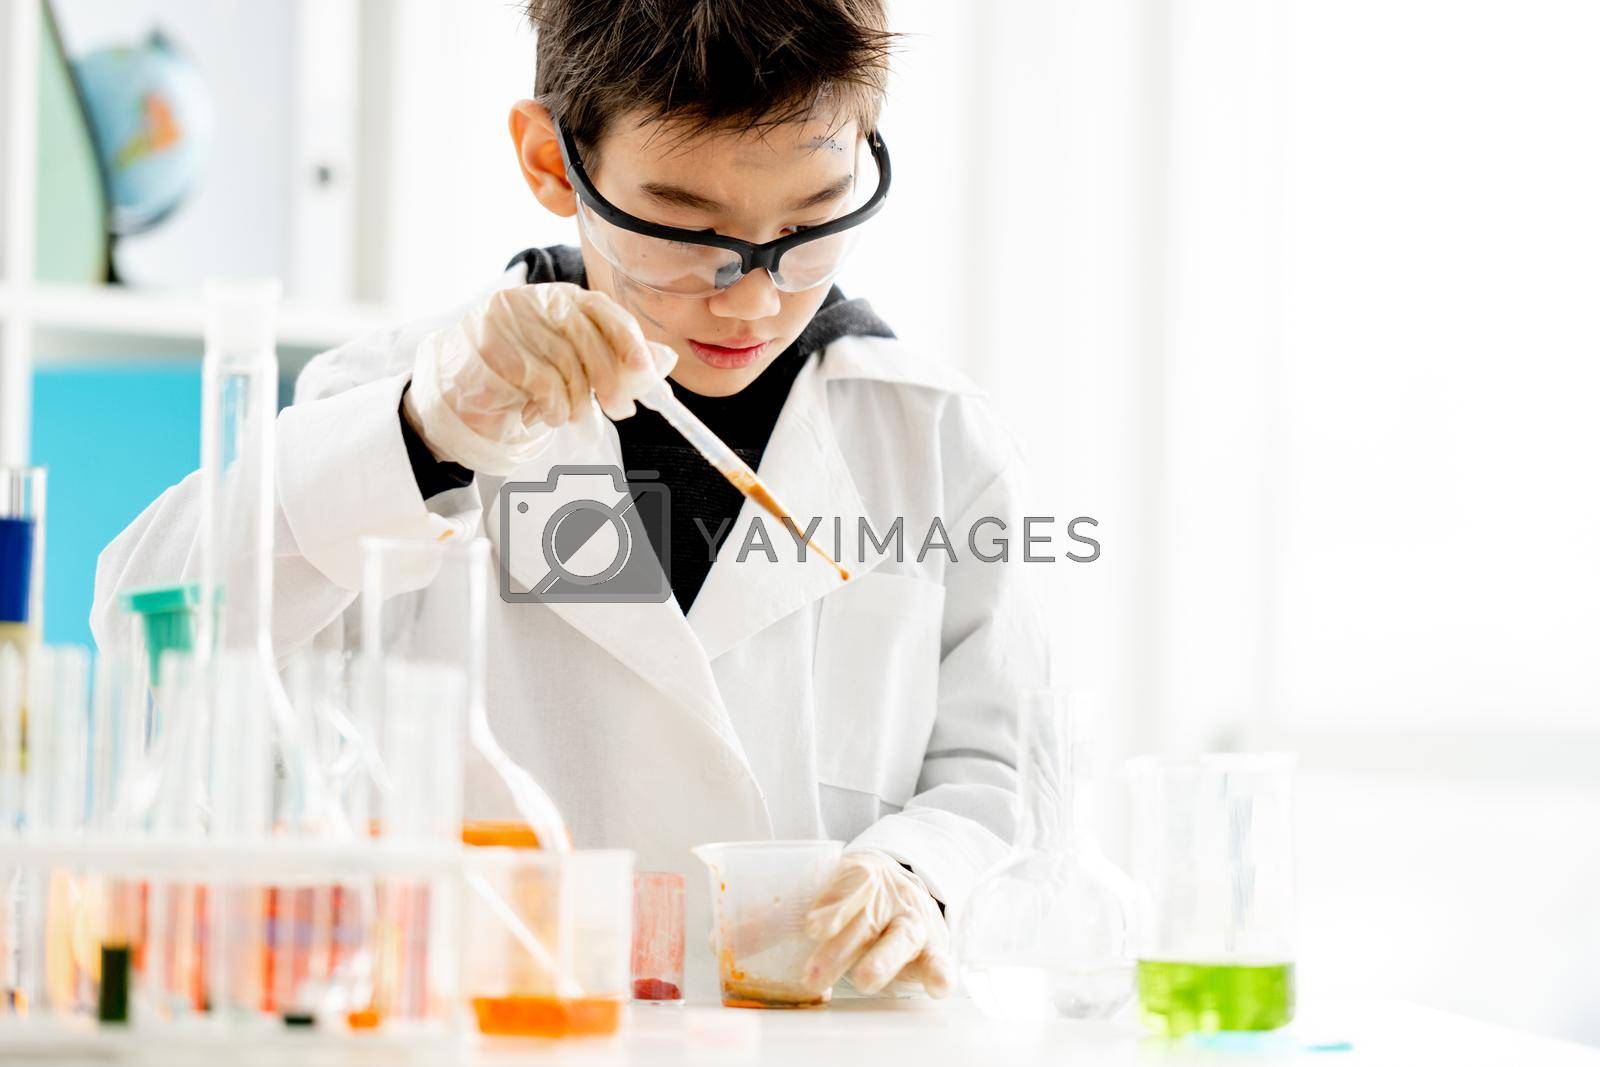 Royalty free image of School boy in chemistry class by tan4ikk1